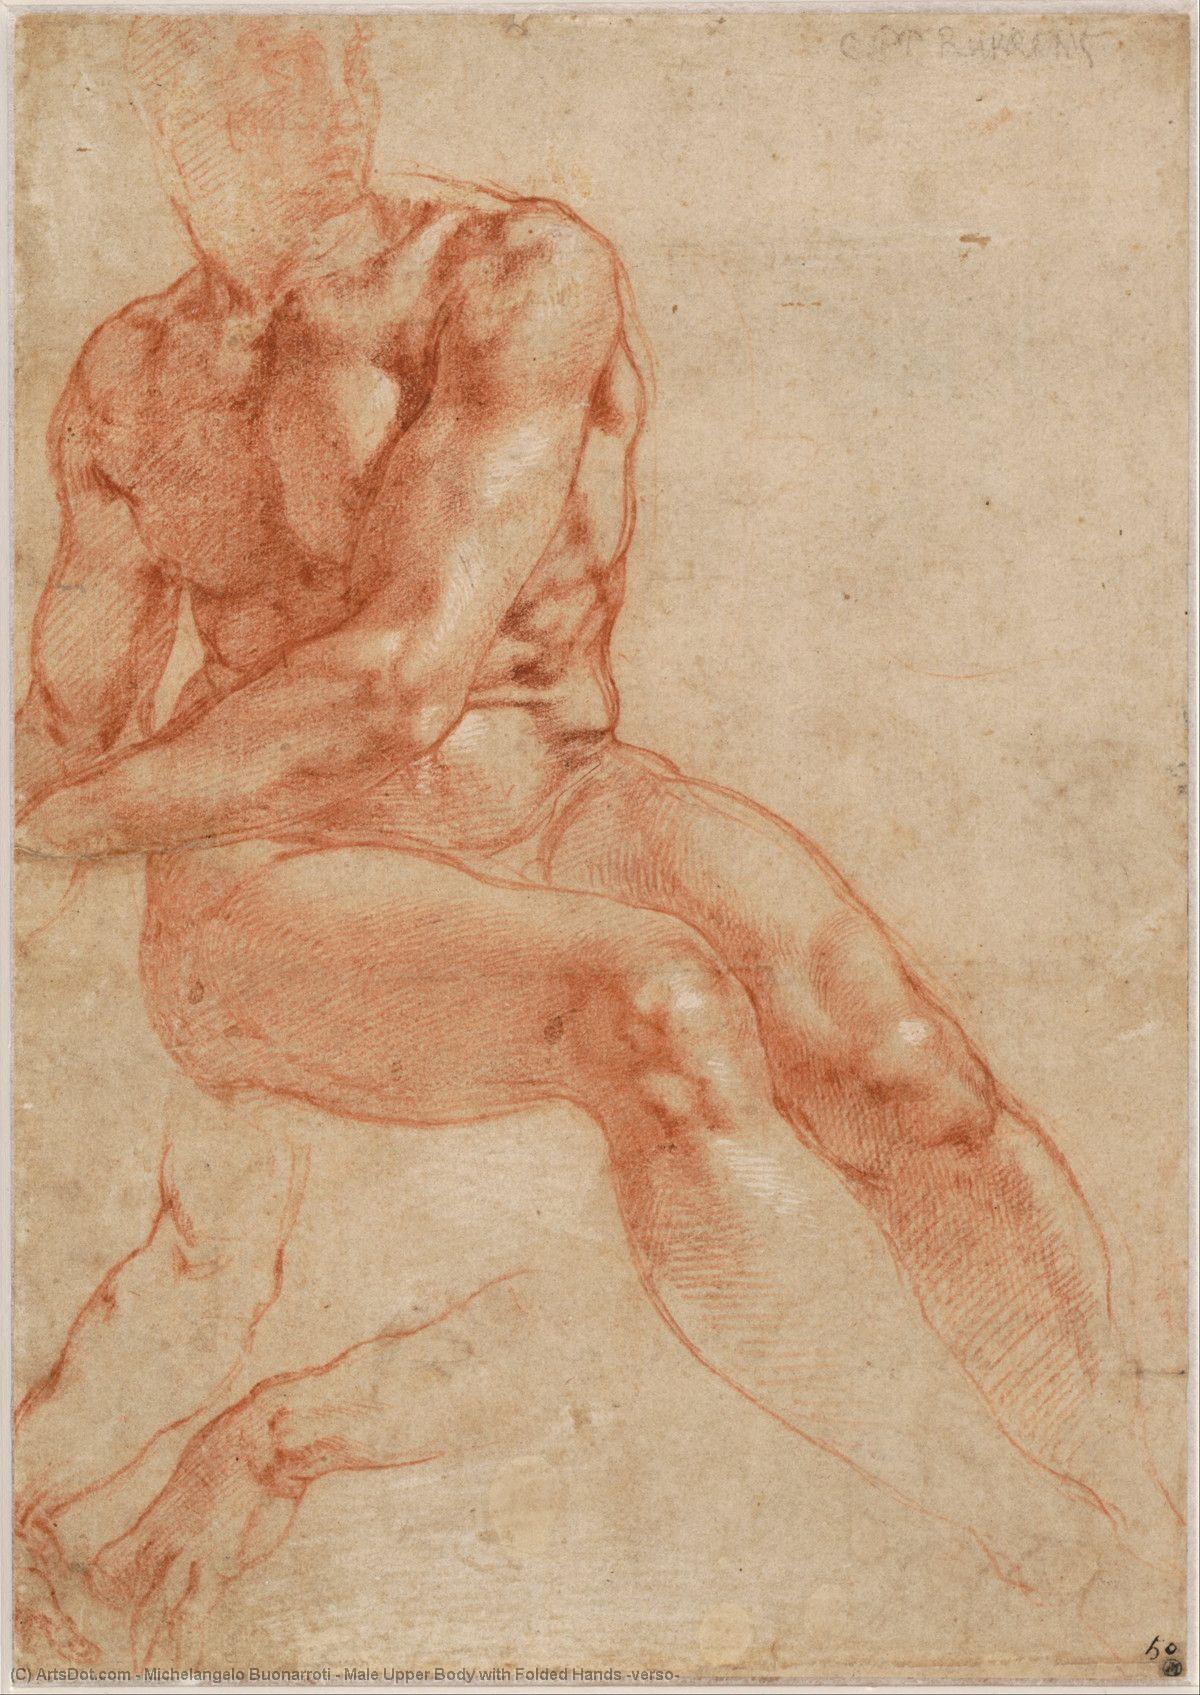 Comprar Reproducciones De Arte Del Museo Cuerpo superior masculino con manos plegadas (verso), 1511 de Michelangelo Buonarroti (1475-1564, Italy) | ArtsDot.com